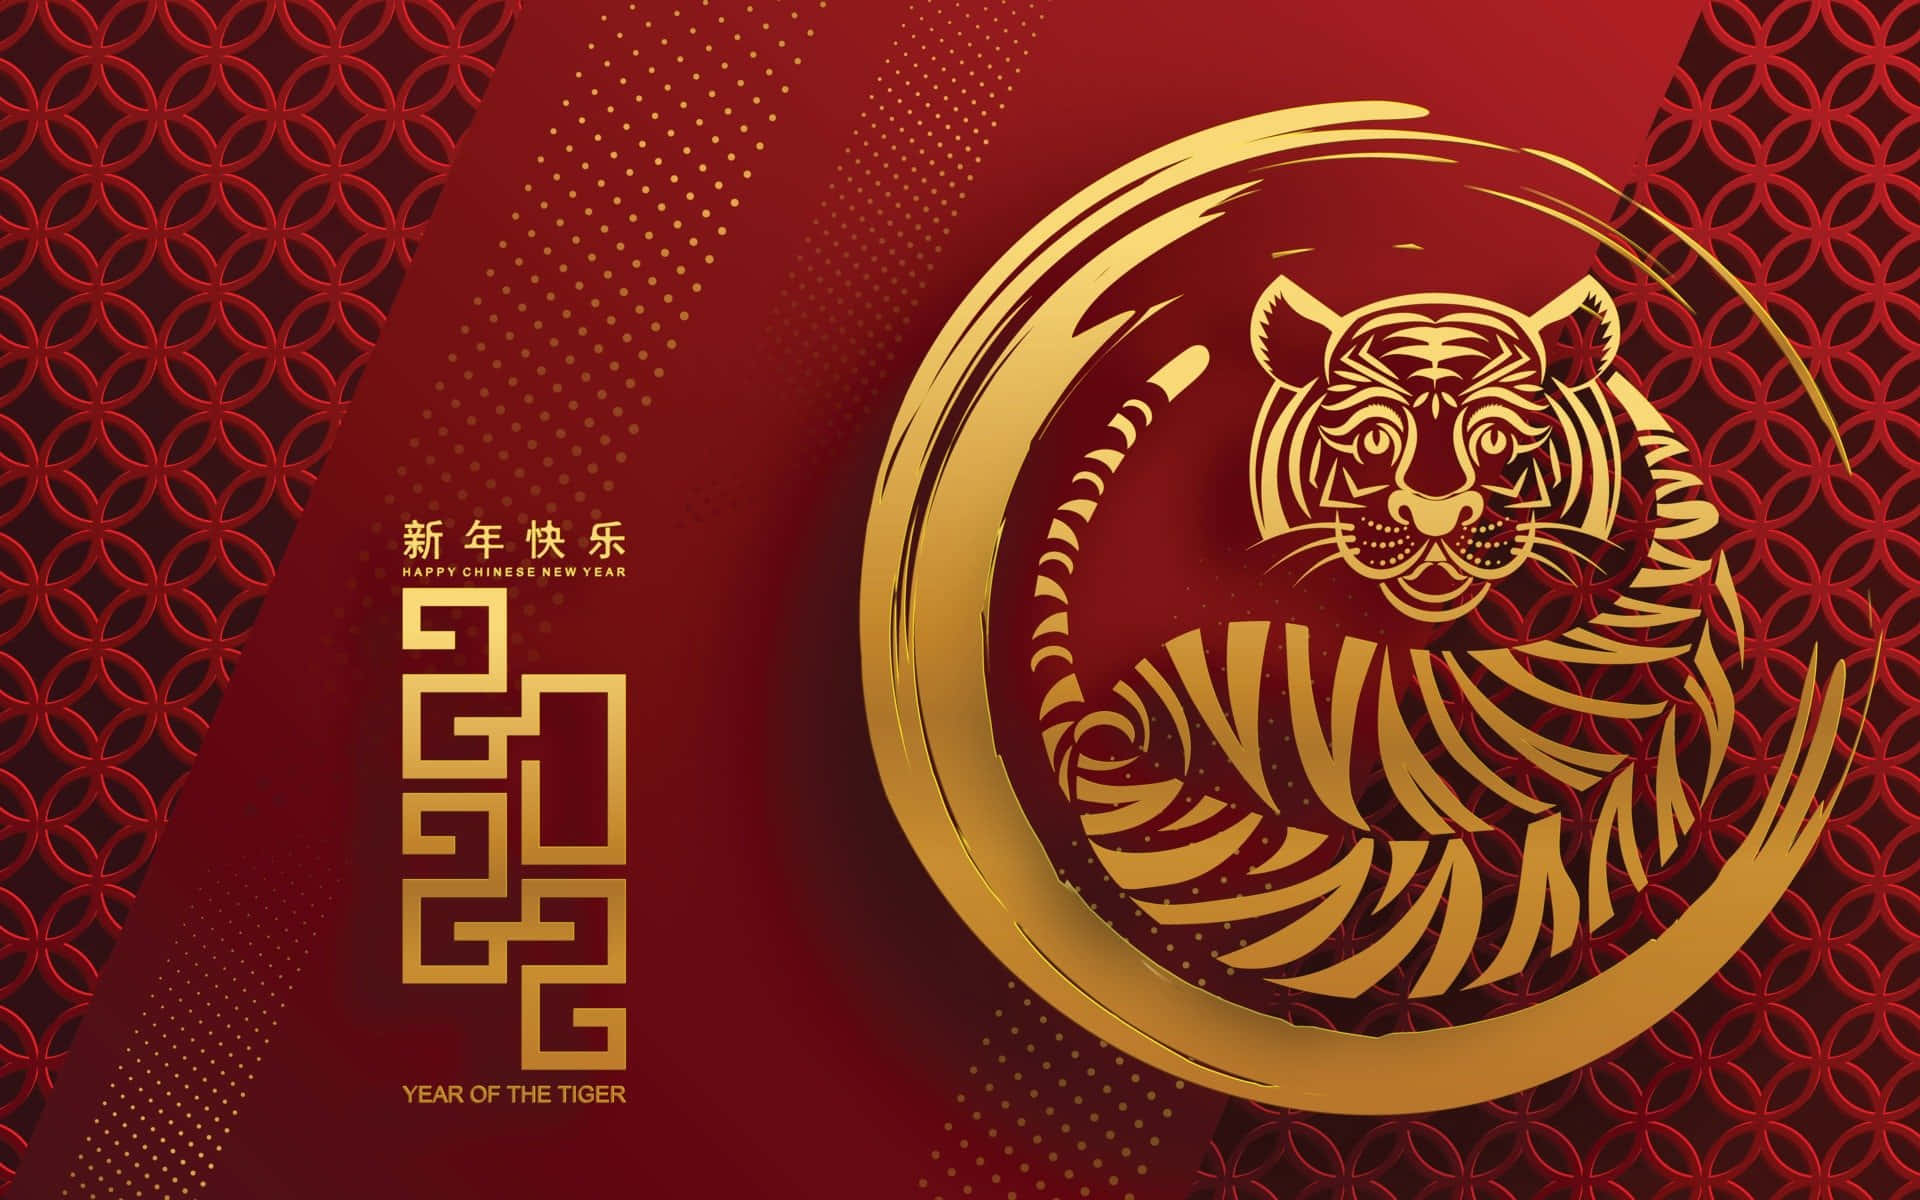 Feieredas Chinesische Neujahr 2022 Mit Einem Schönen, Festlichen Hintergrund!